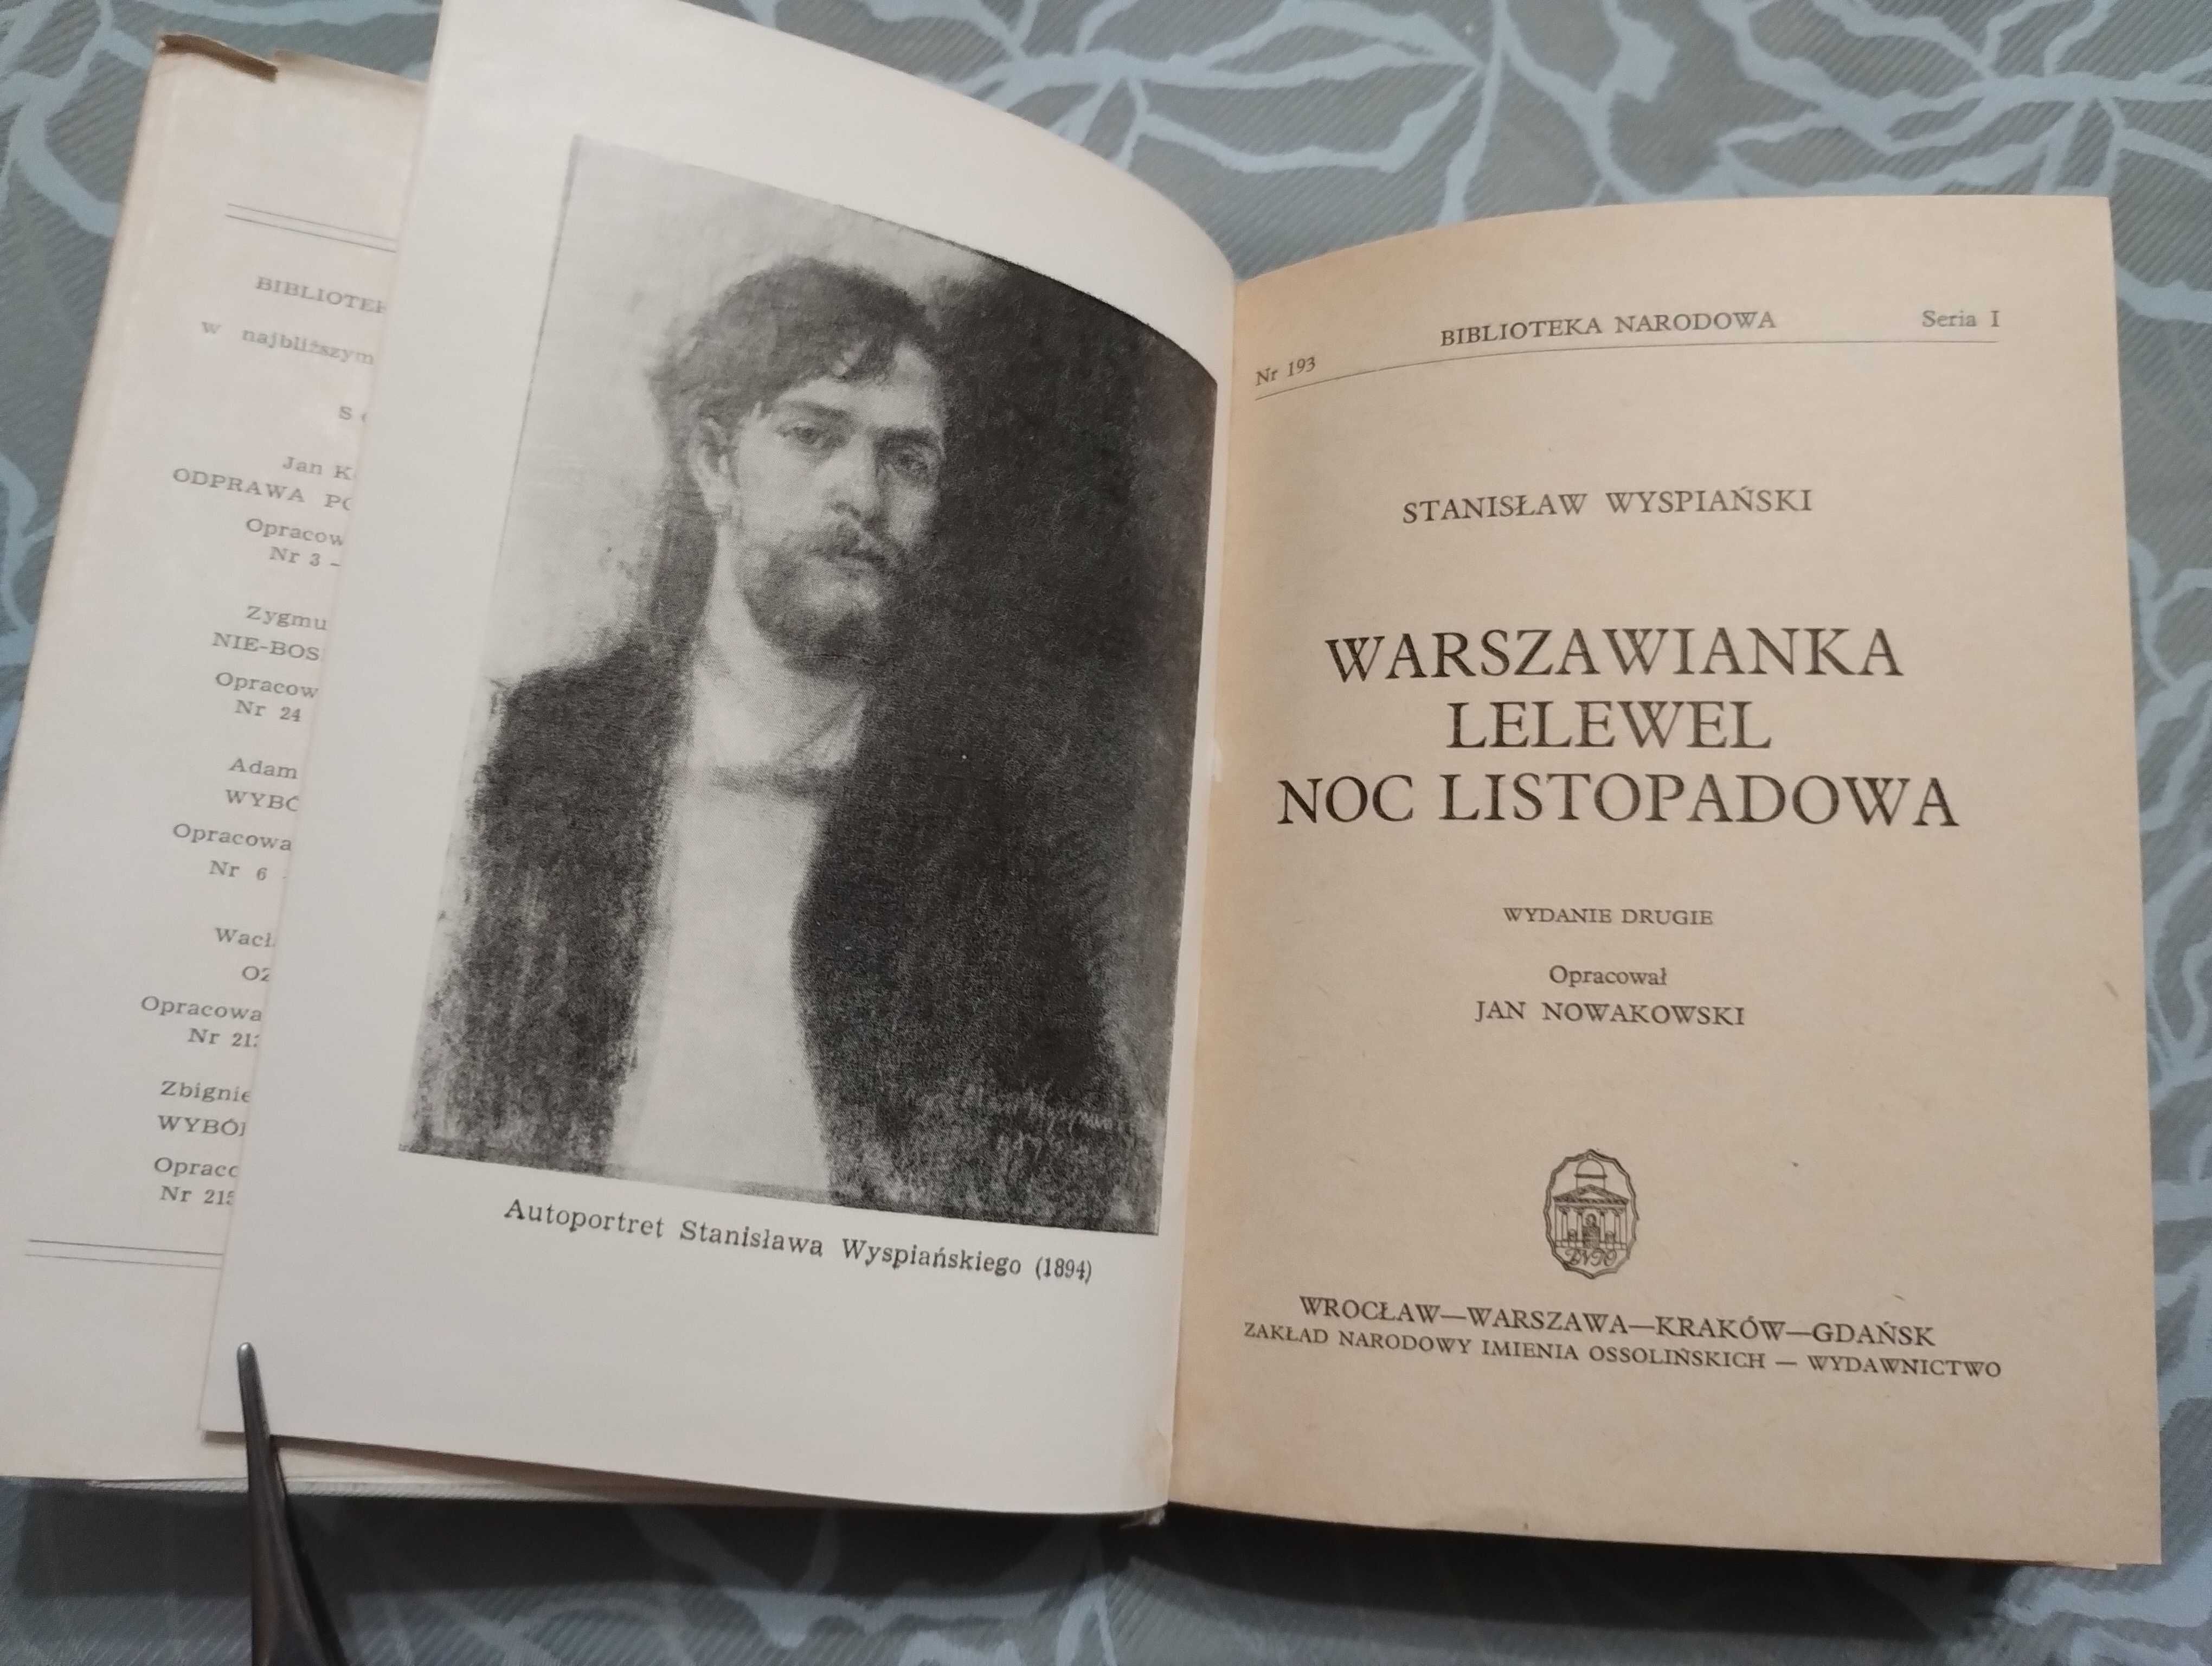 Книга Stanislaw Wyspianski "Warszawianka Lelewel Noc Listopadowa 1974